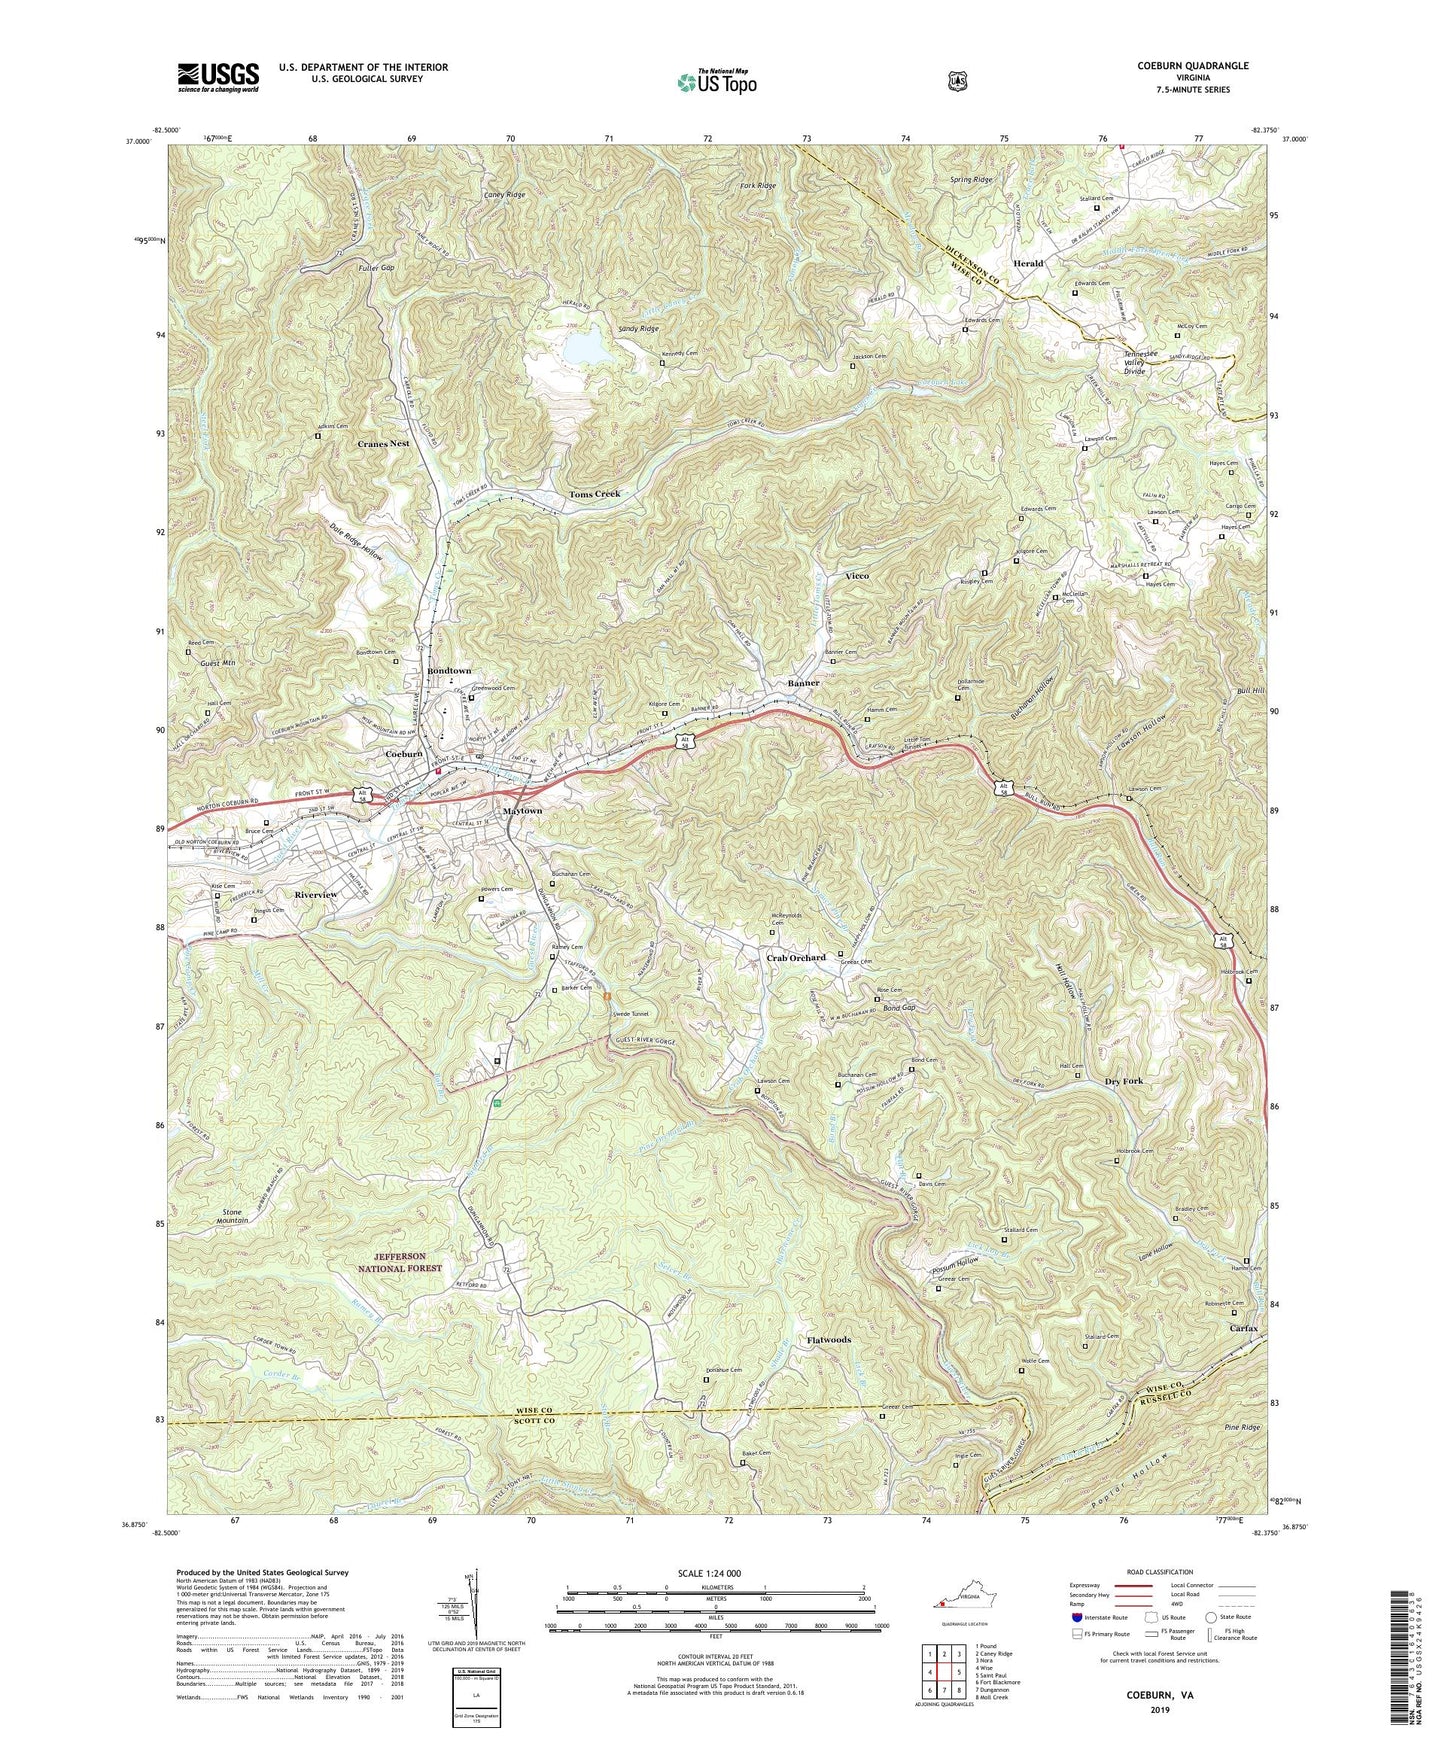 Coeburn Virginia US Topo Map Image